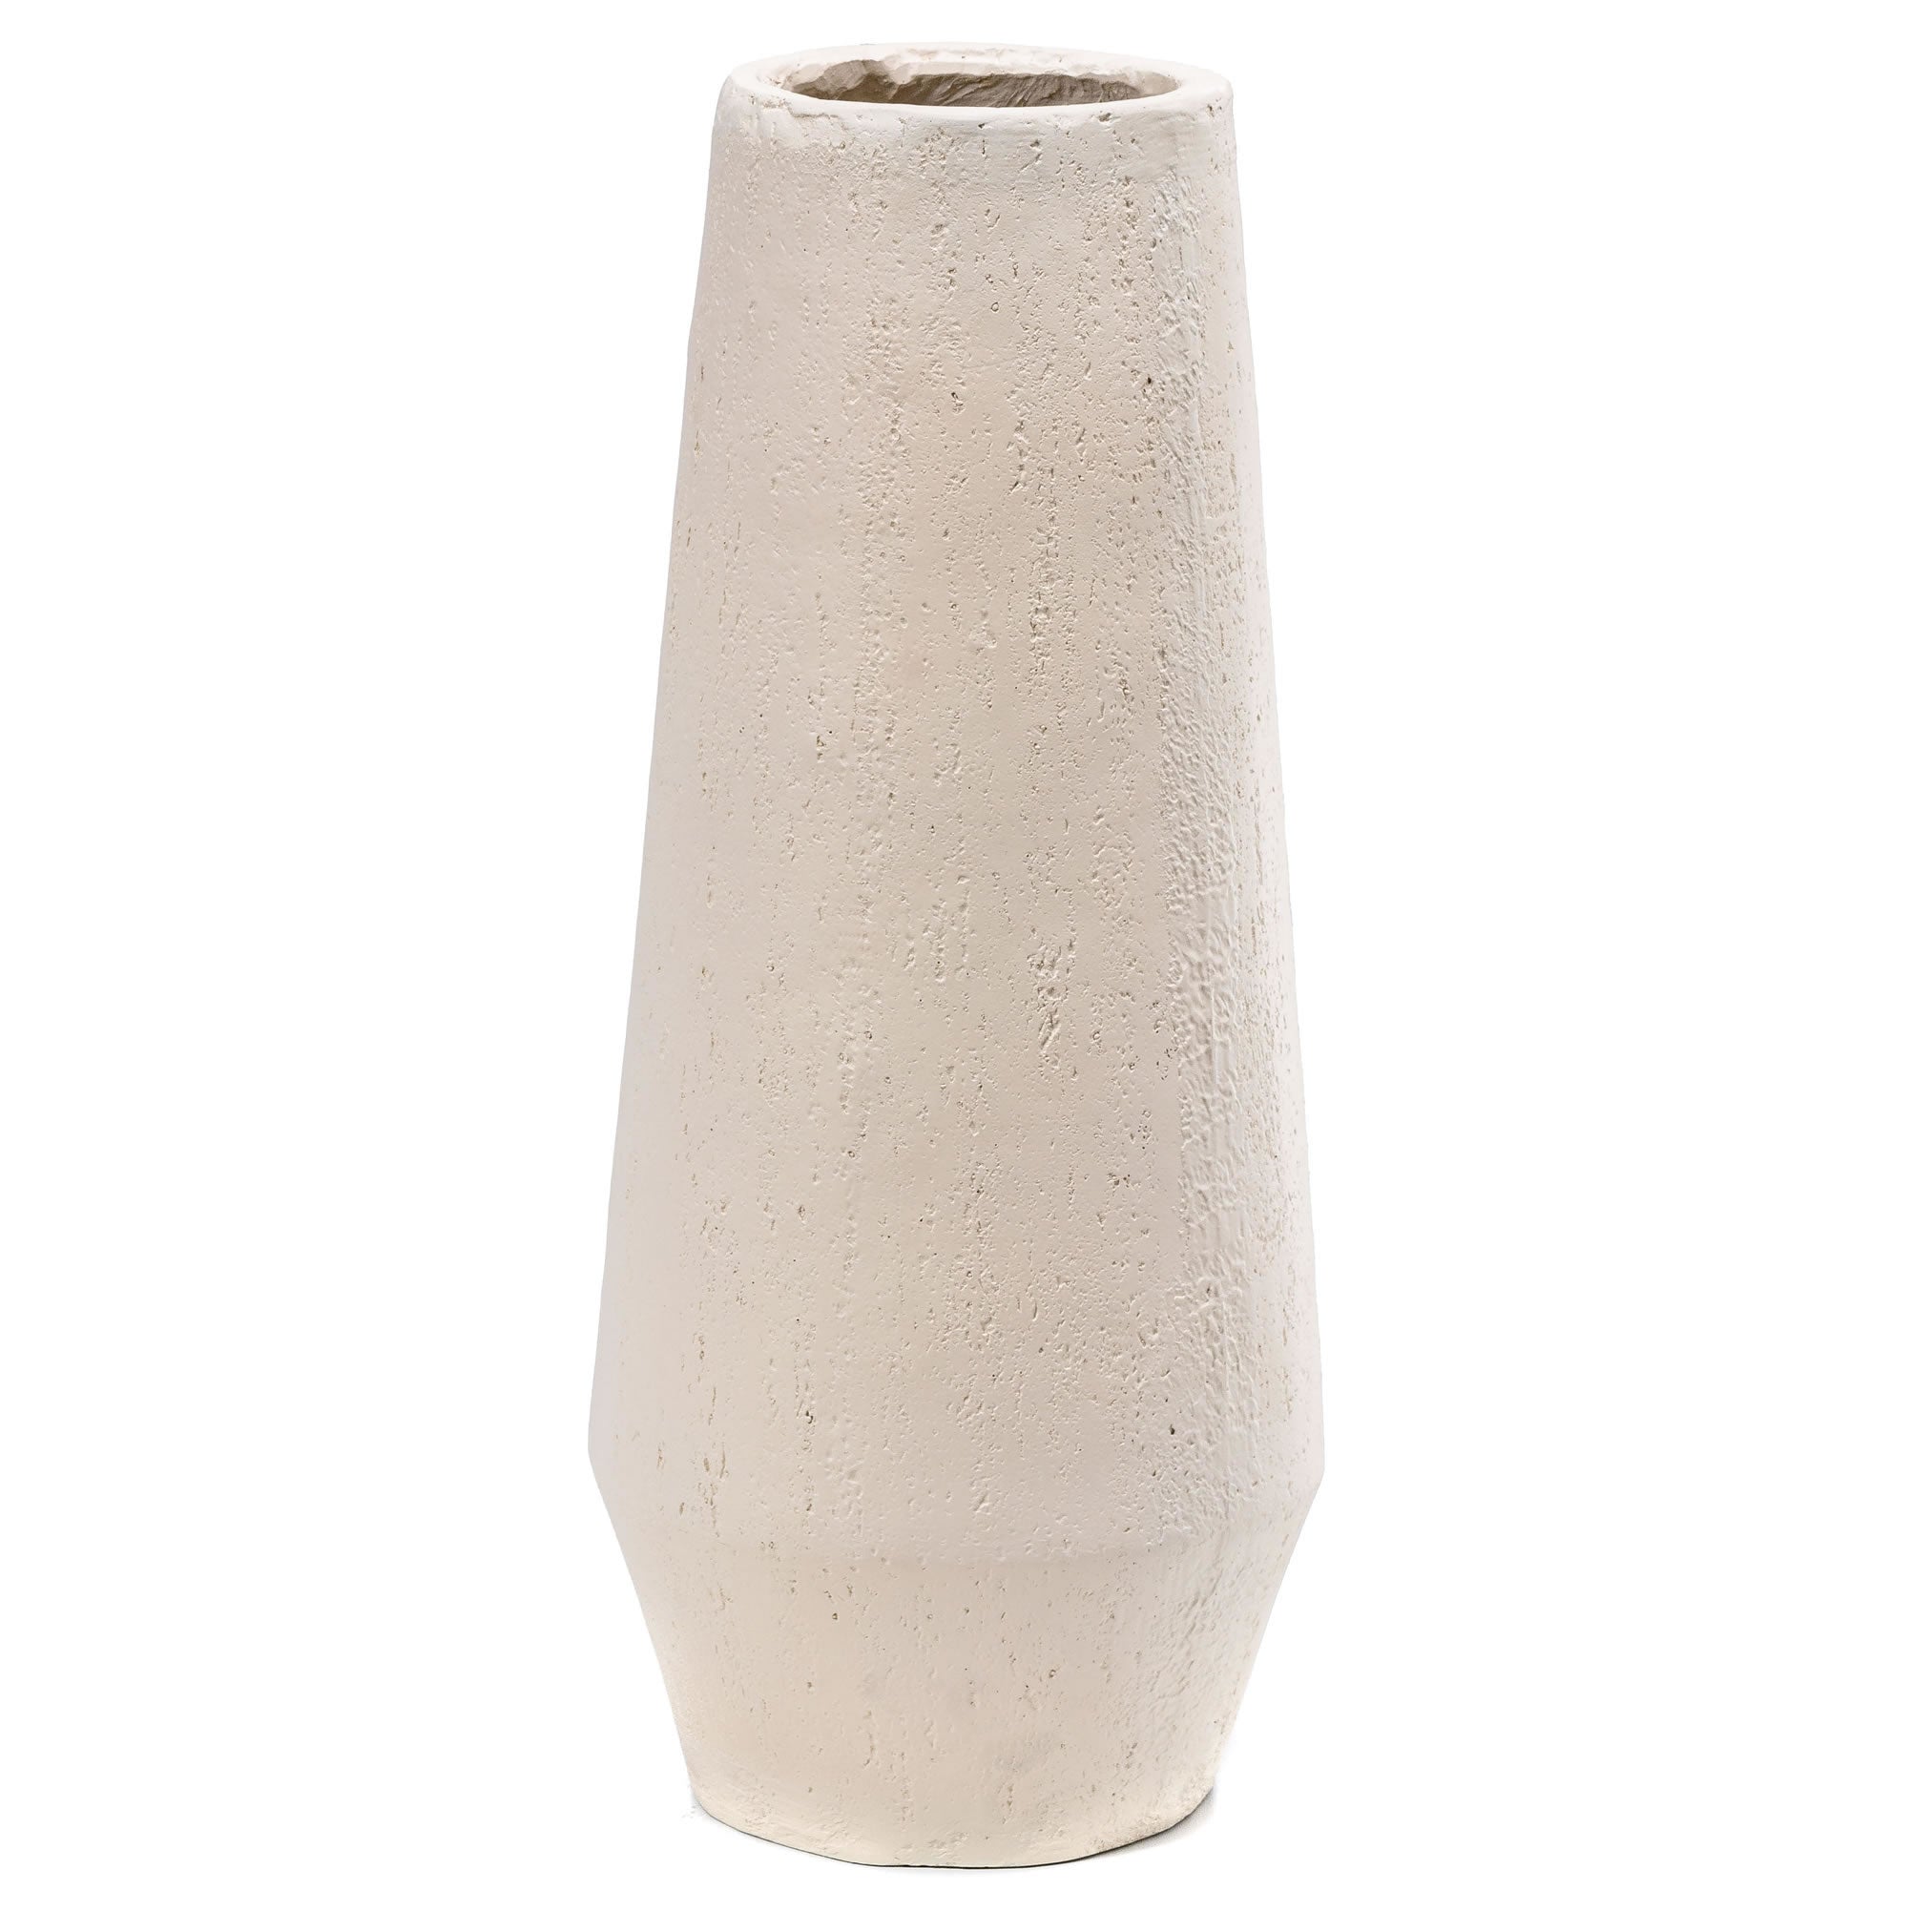 Travertine Effect Large Vase- White